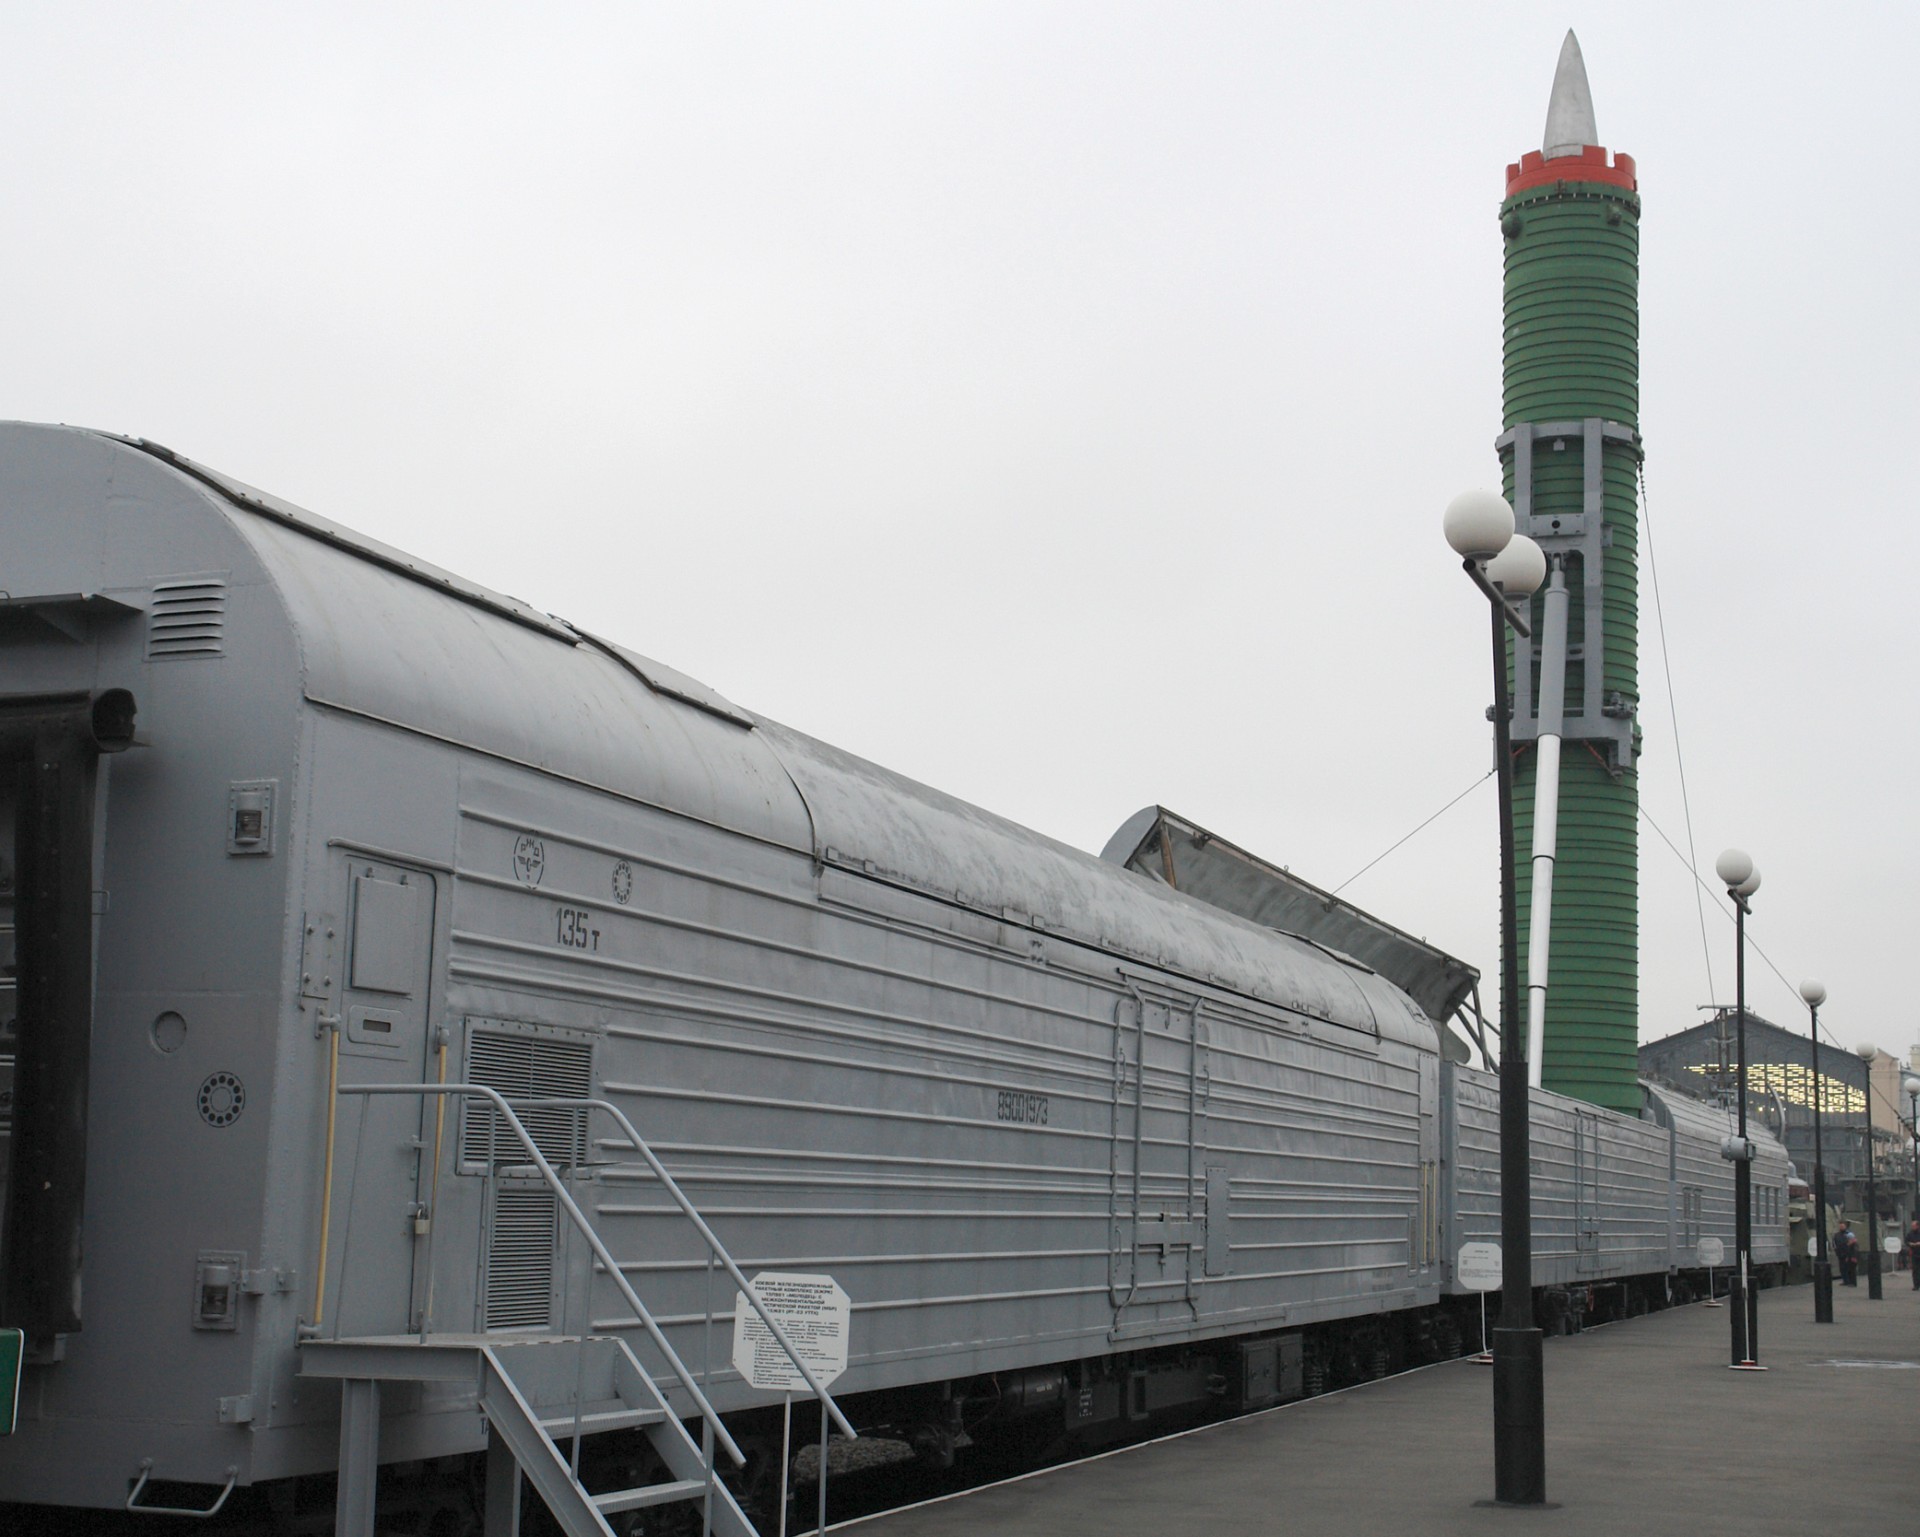 «Ядерный» поезд: БЖРК «Баргузин» с межконтинентальными баллистическими ракетами - 3